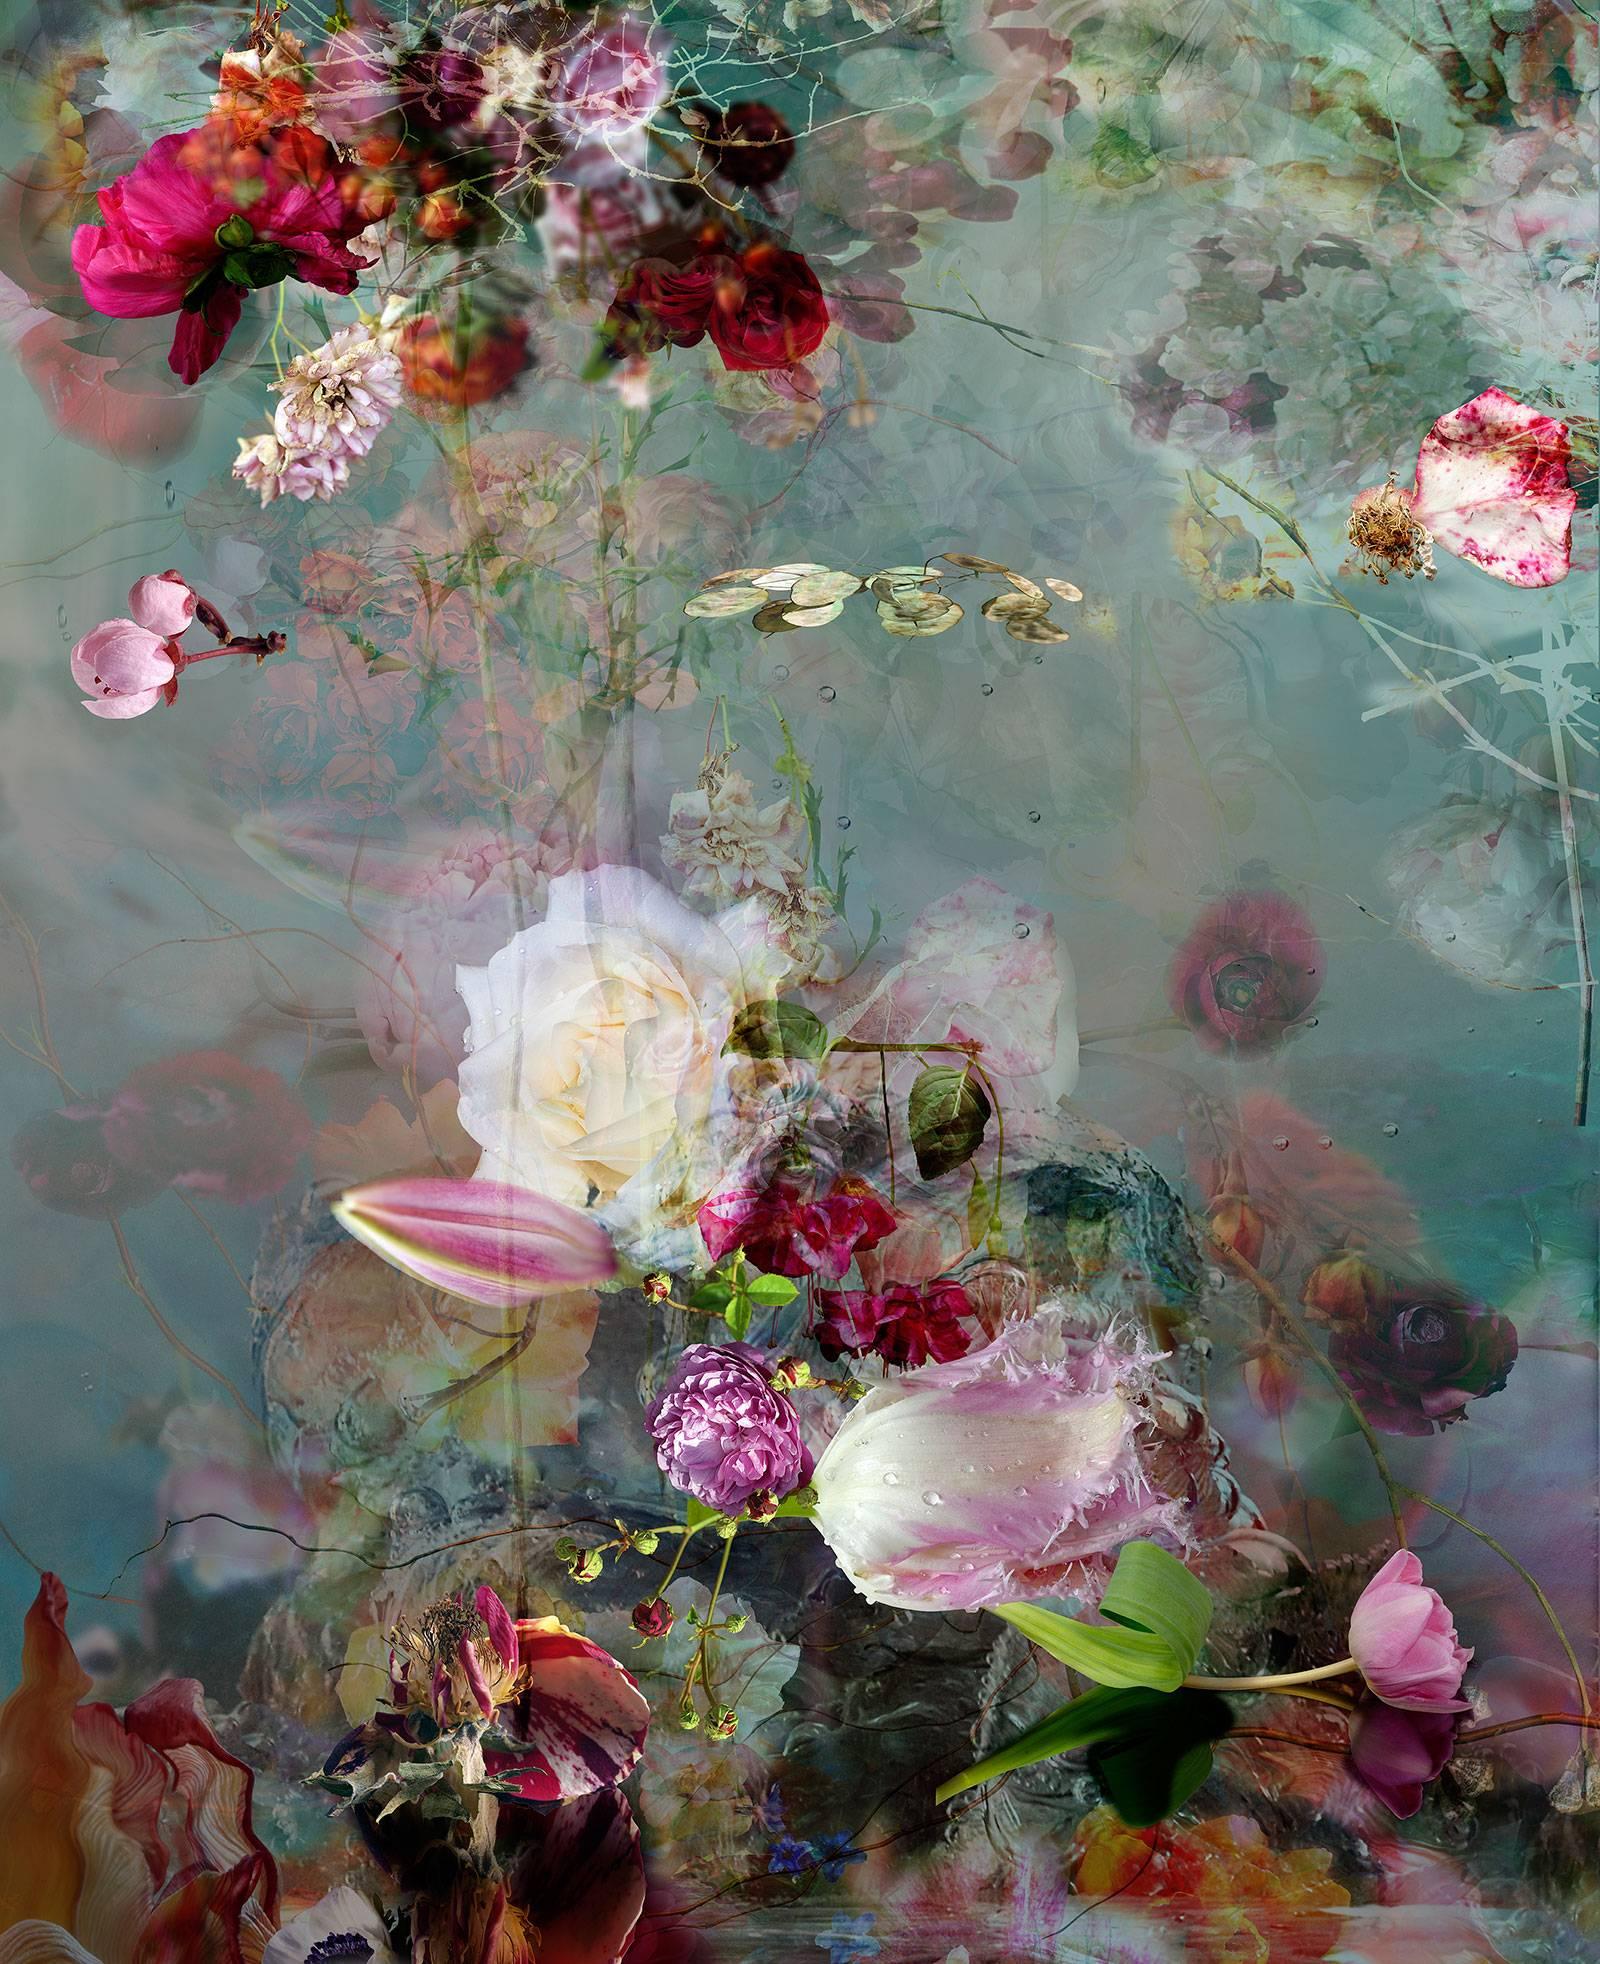 Still-Life Photograph Isabelle Menin - Sinking n°1 - Photographie contemporaine de natures mortes florales